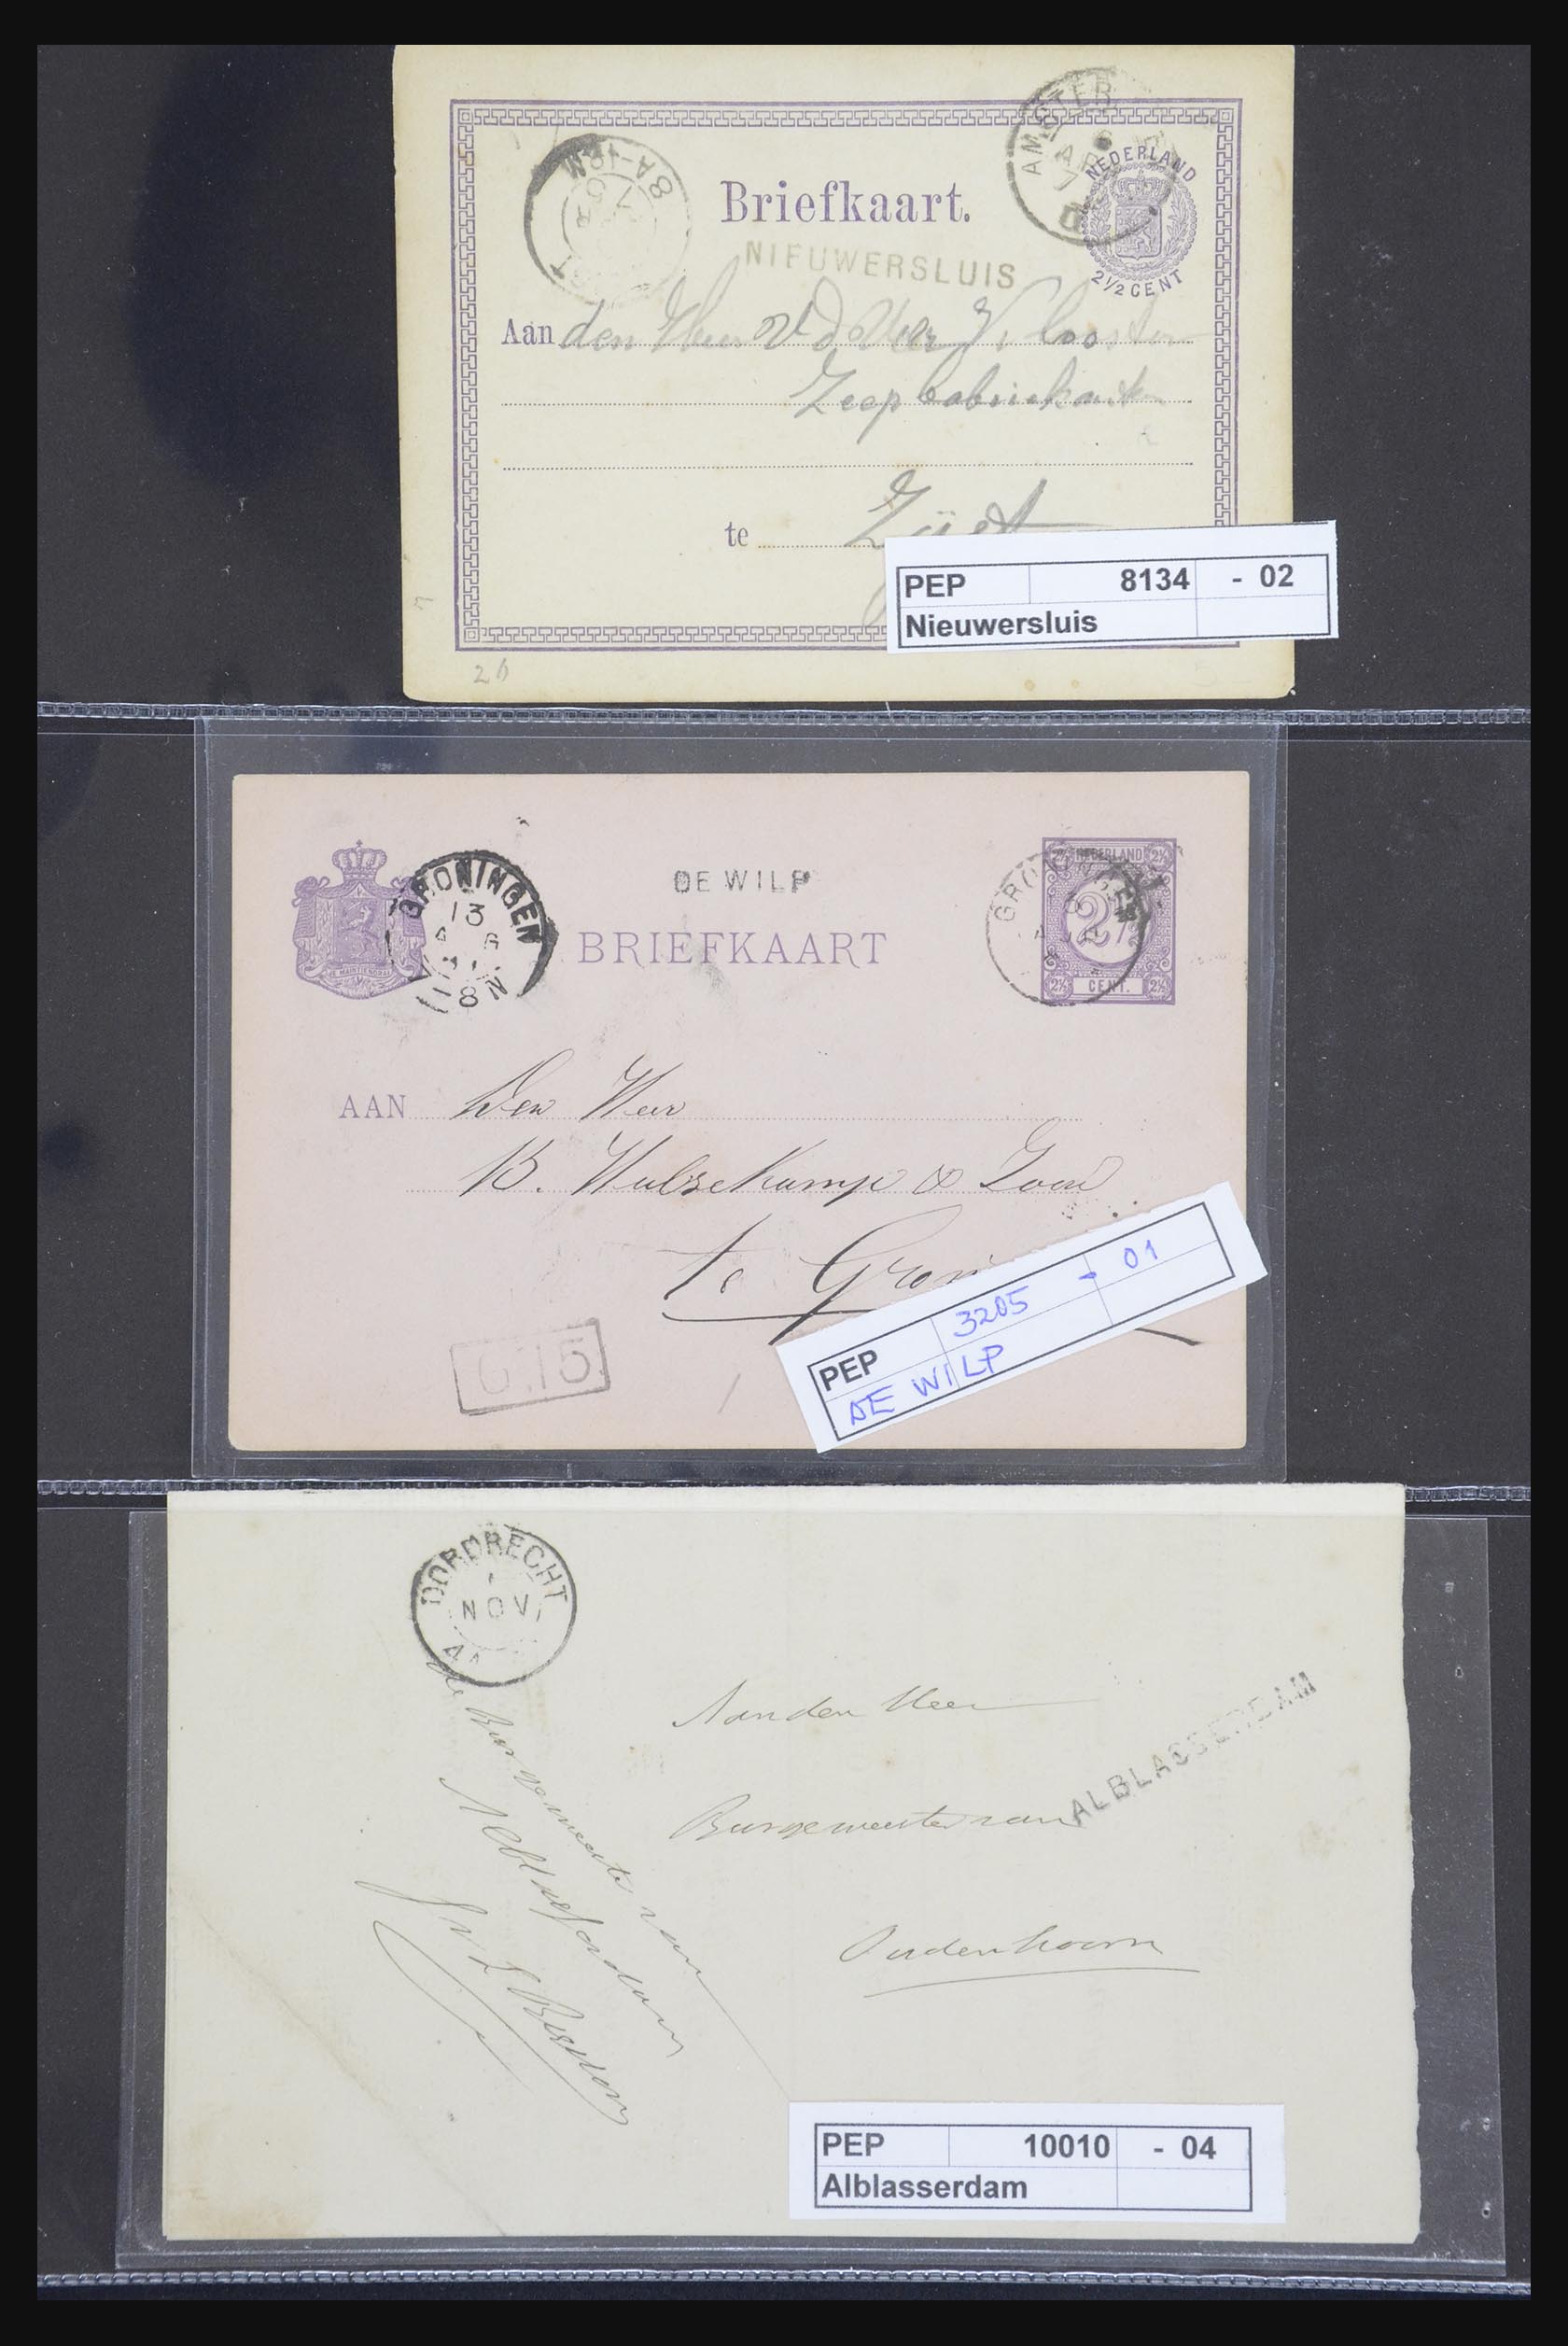 21718 019 - 21718 Briefkaarten met gotische langstempels.